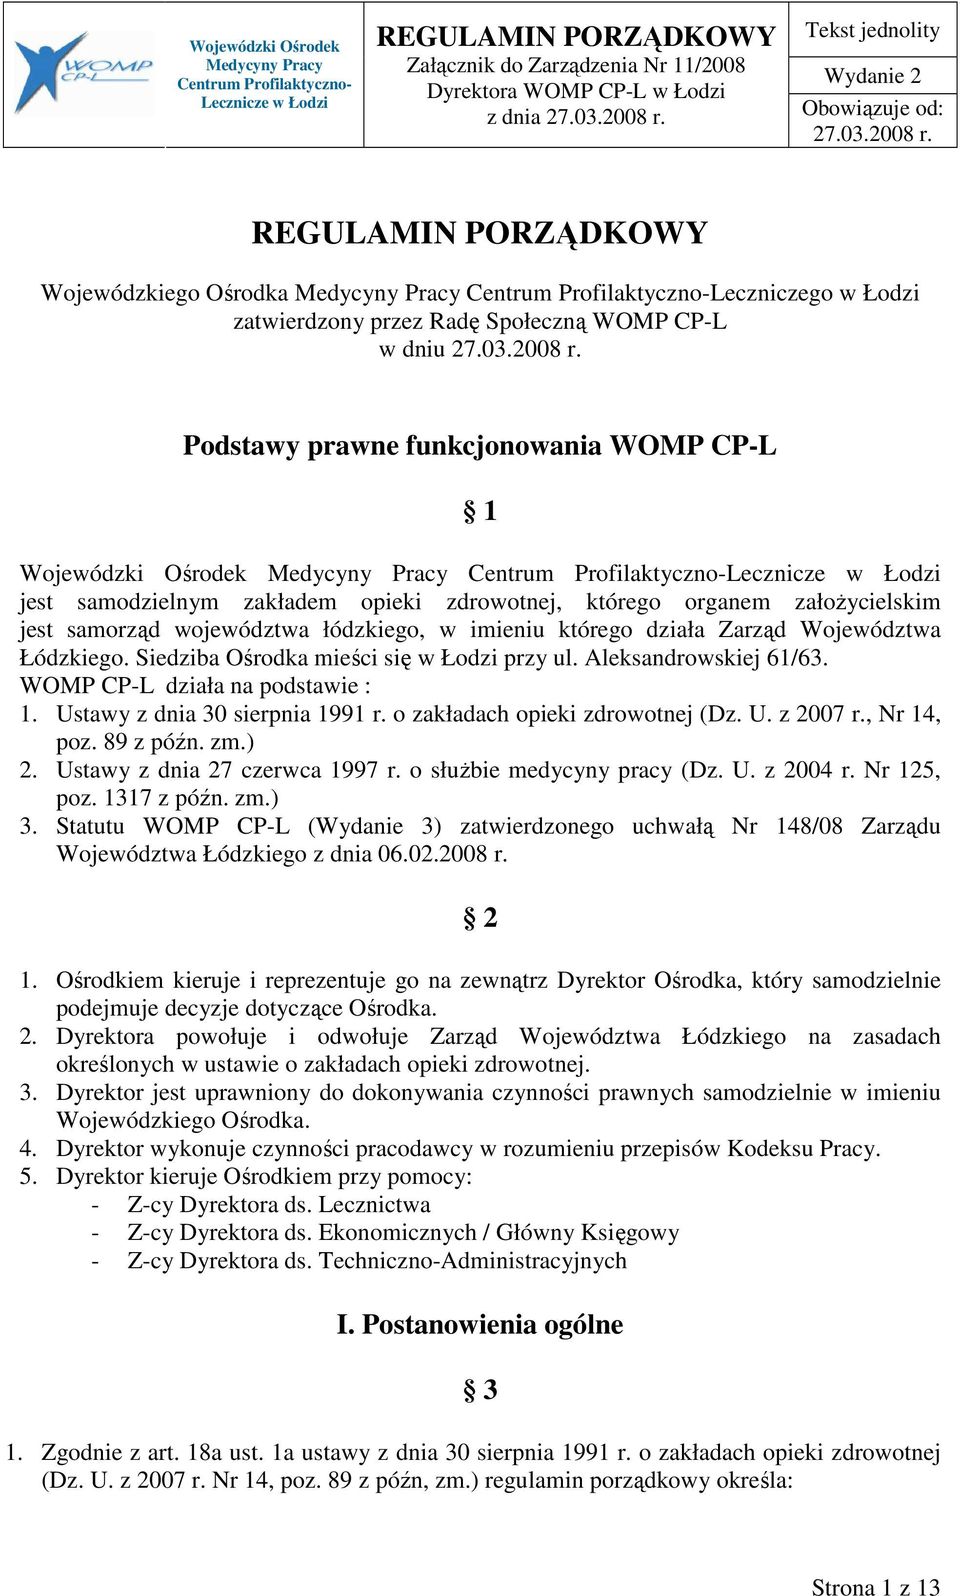 Aleksandrowskiej 61/63. WOMP CP-L działa na podstawie : 1. Ustawy z dnia 30 sierpnia 1991 r. o zakładach opieki zdrowotnej (Dz. U. z 2007 r., Nr 14, poz. 89 z późn. zm.) 2.